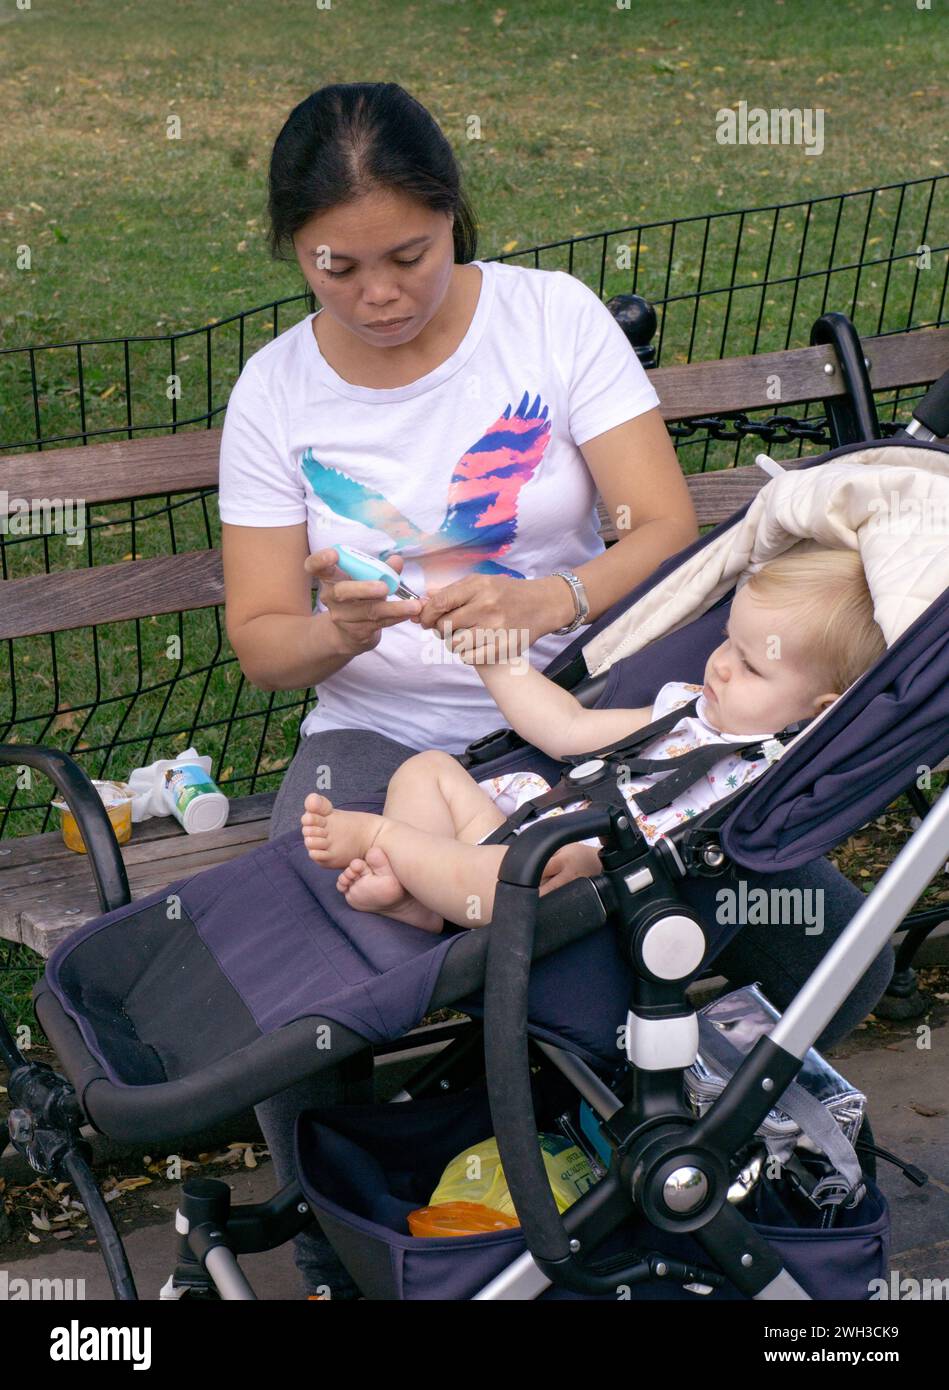 Ein Kindermädchen schneidet die Fingernägel eines Kindes mit einem etwas, das wie ein spezieller Clipper für Kinder aussieht. Er scheint unglücklich zu sein. Im Washington Square Park in Manhattan. Stockfoto